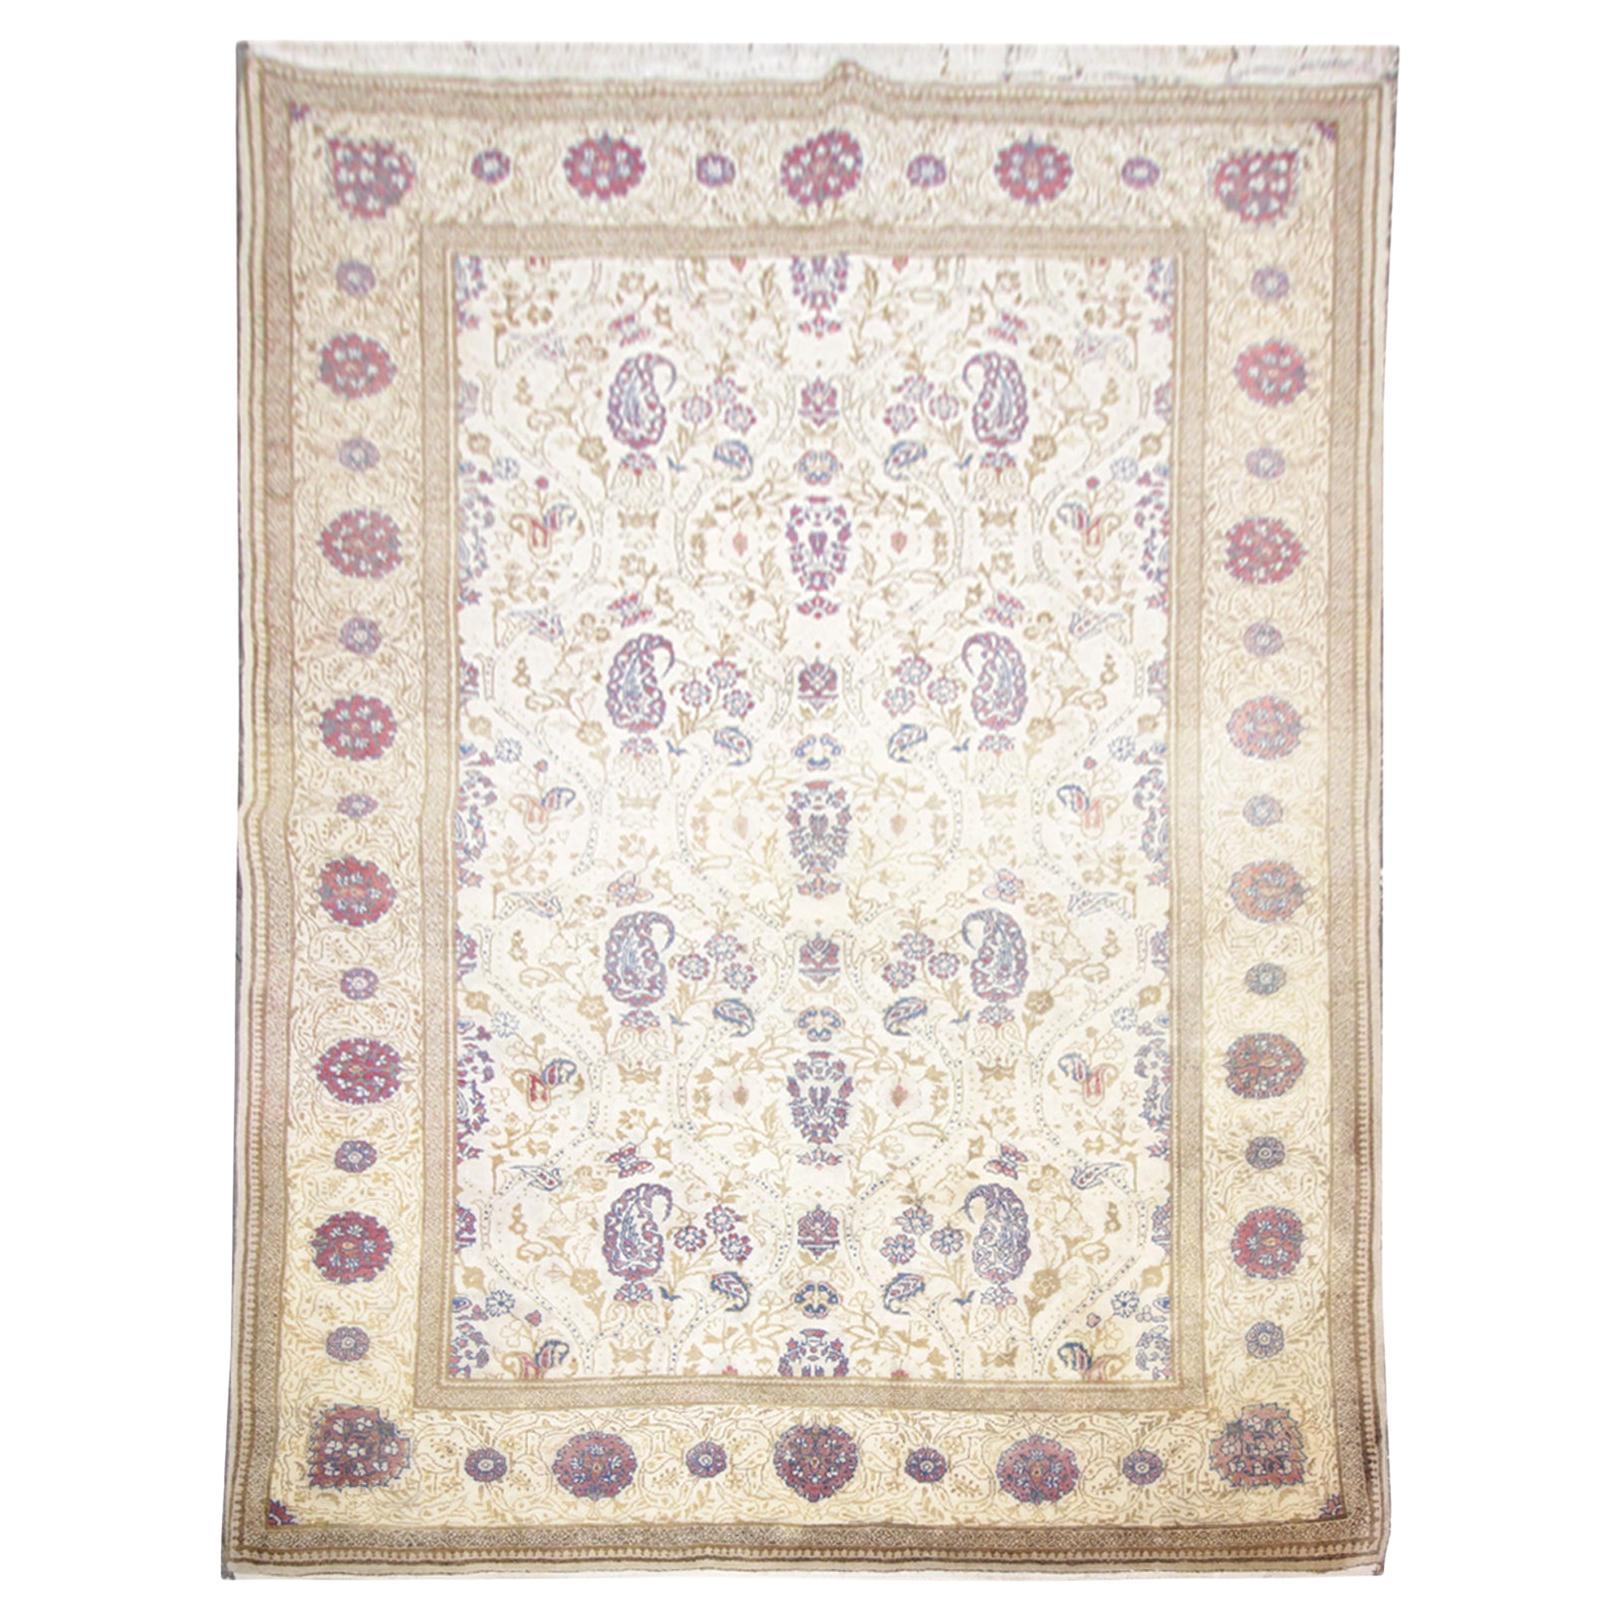 Oriental Rug Handmade Carpet Vintage Turkish Rug, Cream Wool Living Room Rug